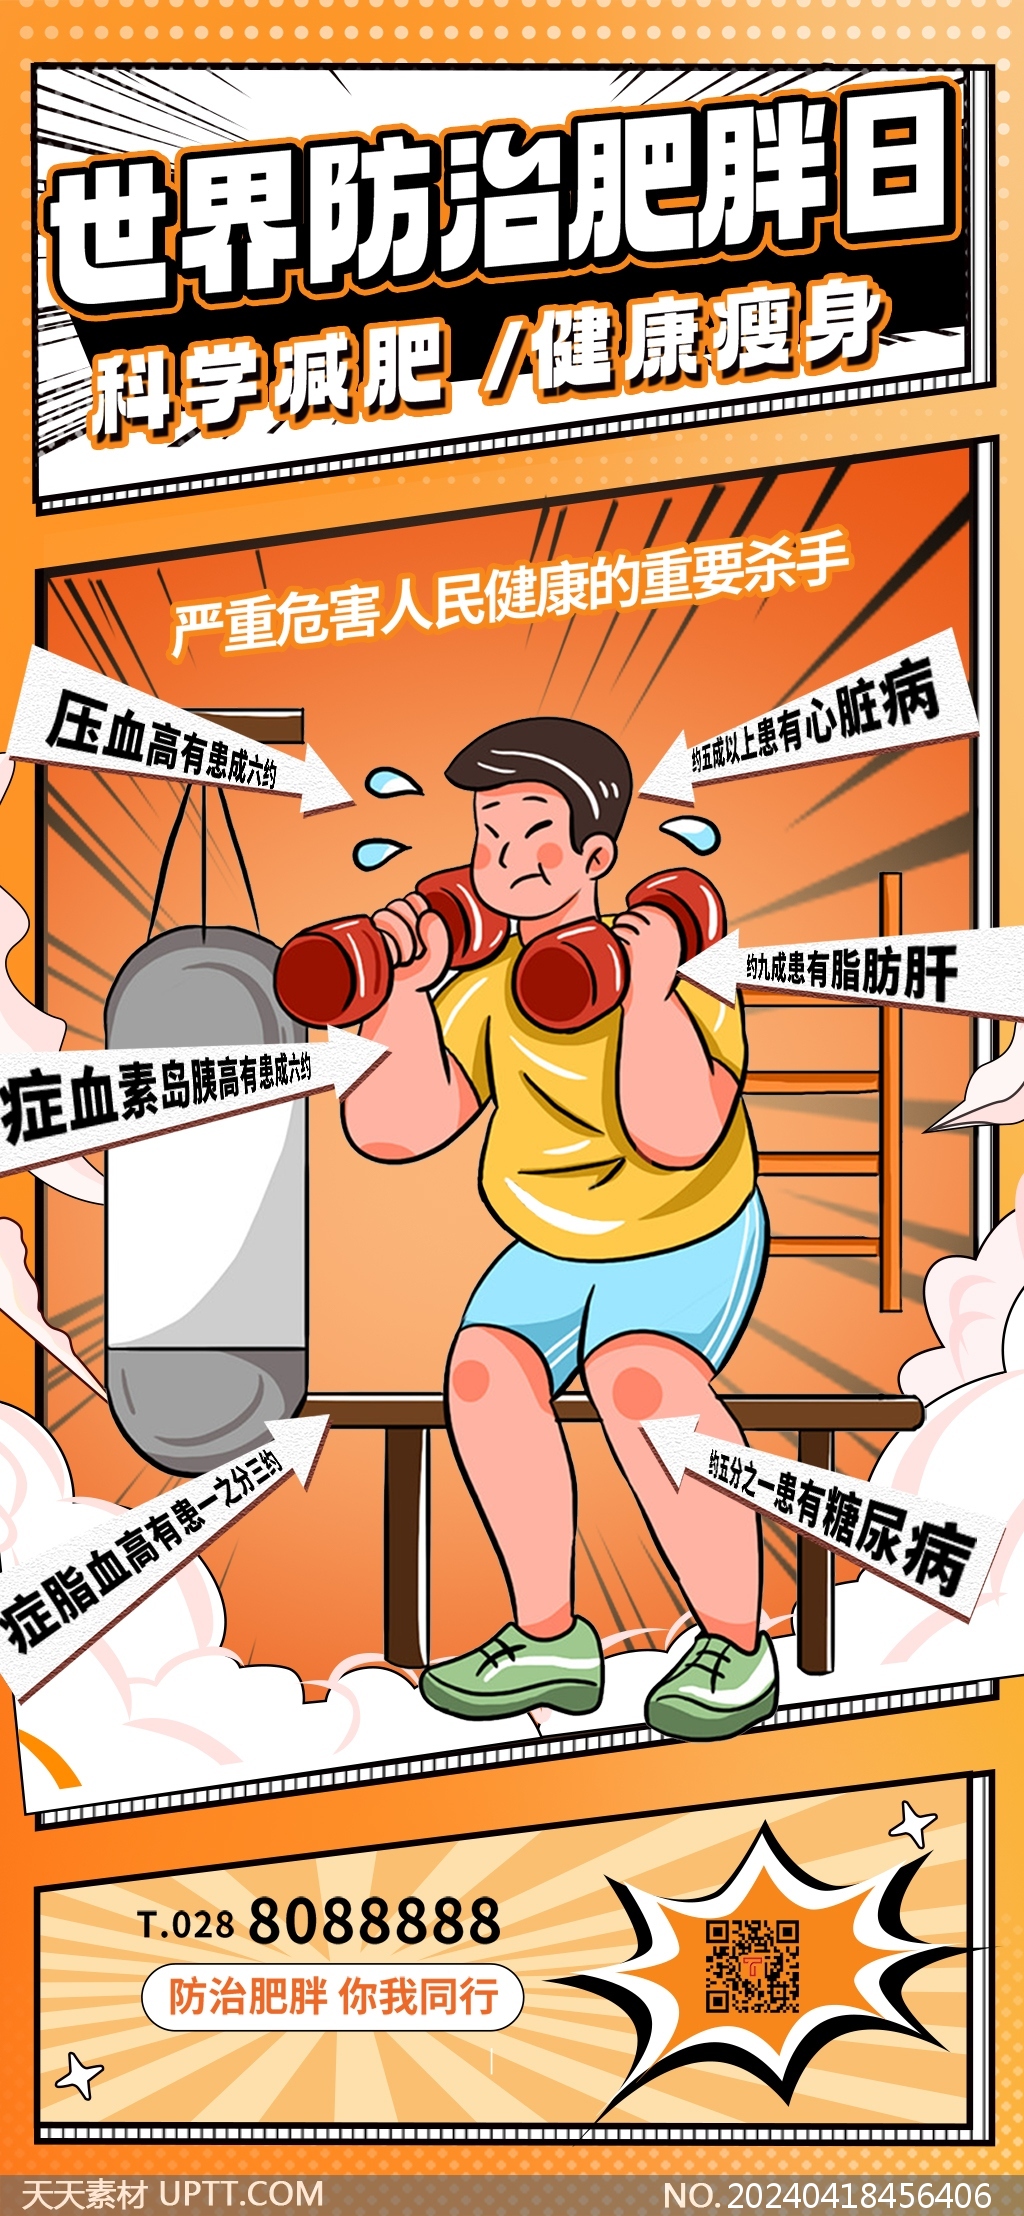 世界防治肥胖日黄色卡通漫画手机海报模版